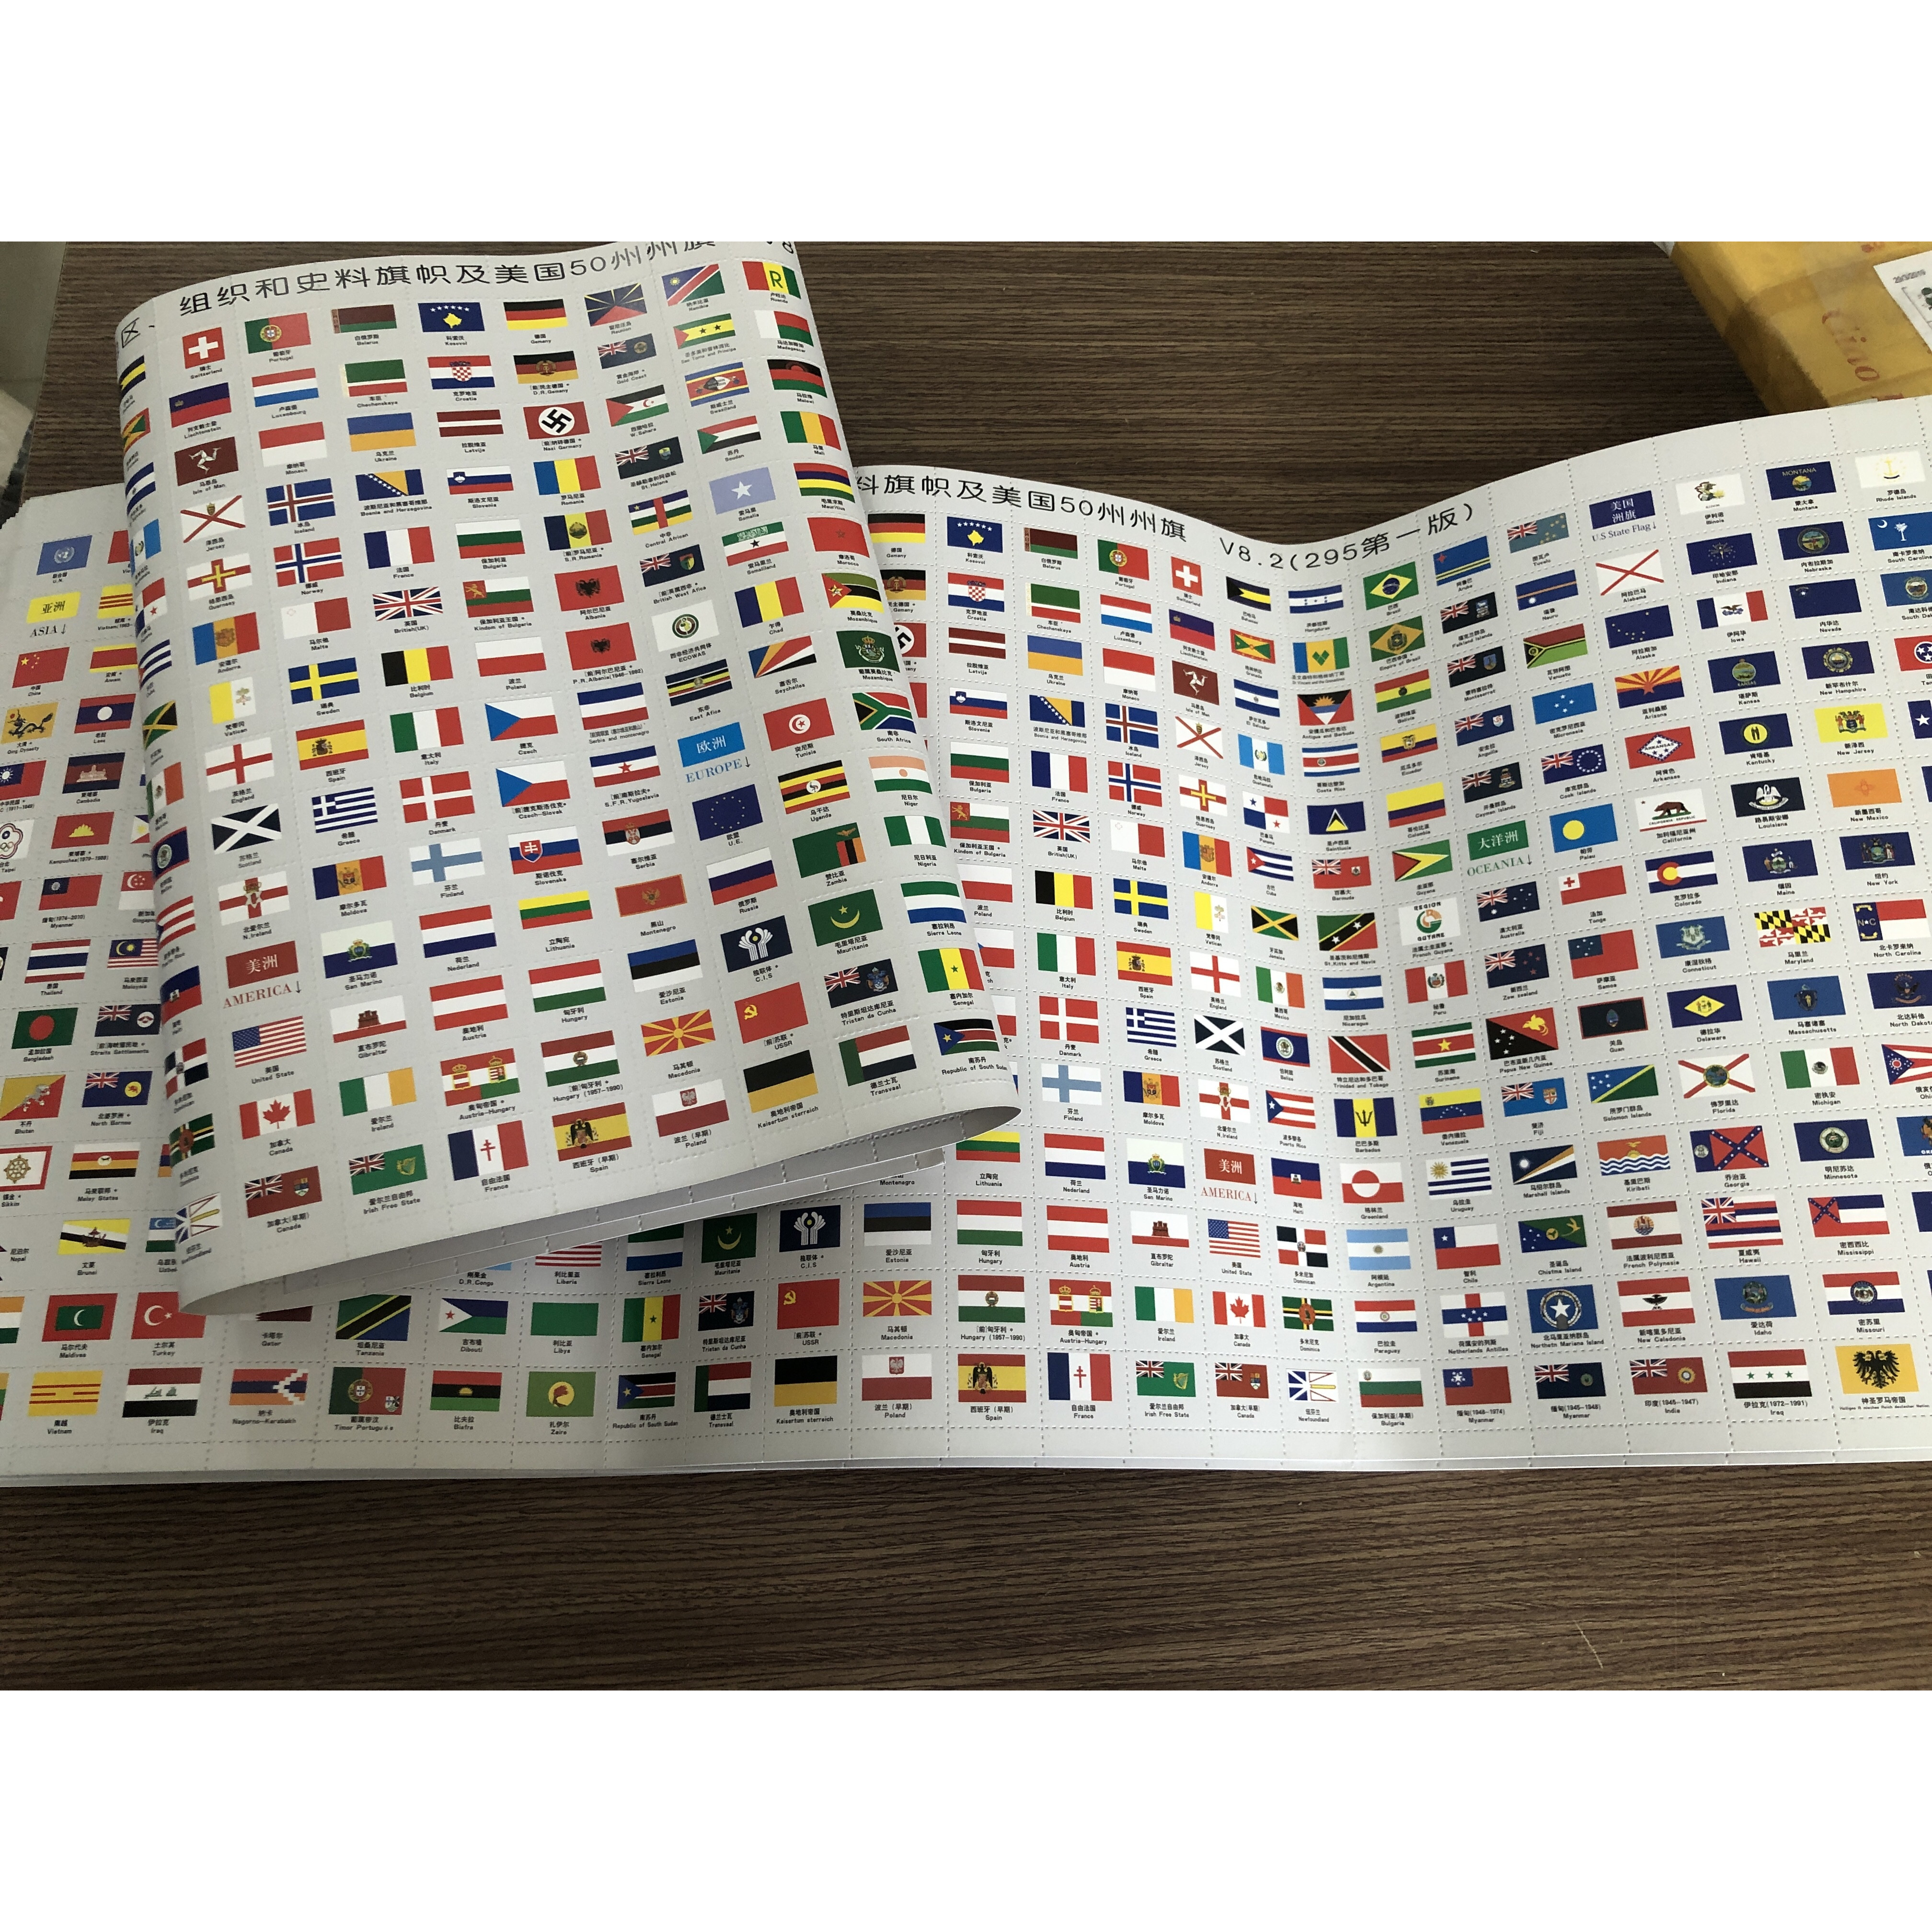 Bộ Quốc Kỳ Các Nước Trên Thế Giới và 50 Tiểu Bang của Mỹ (295 cờ)